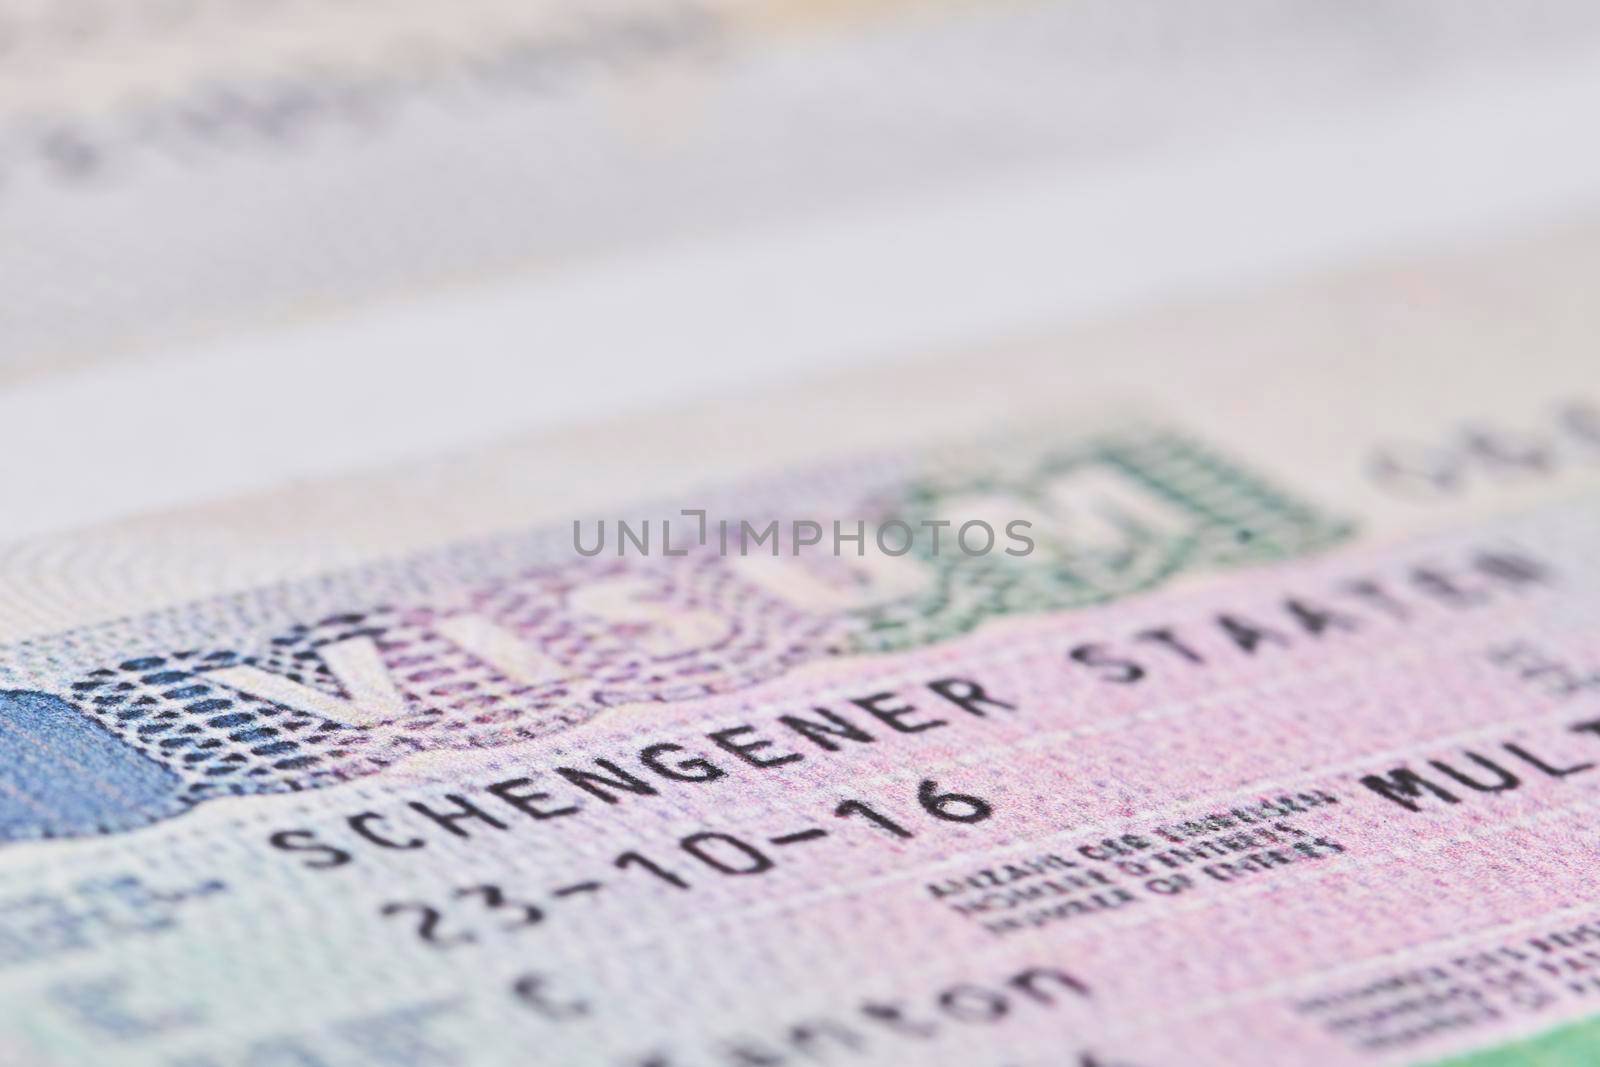 Schengen visa in passport. Close-up by golibtolibov